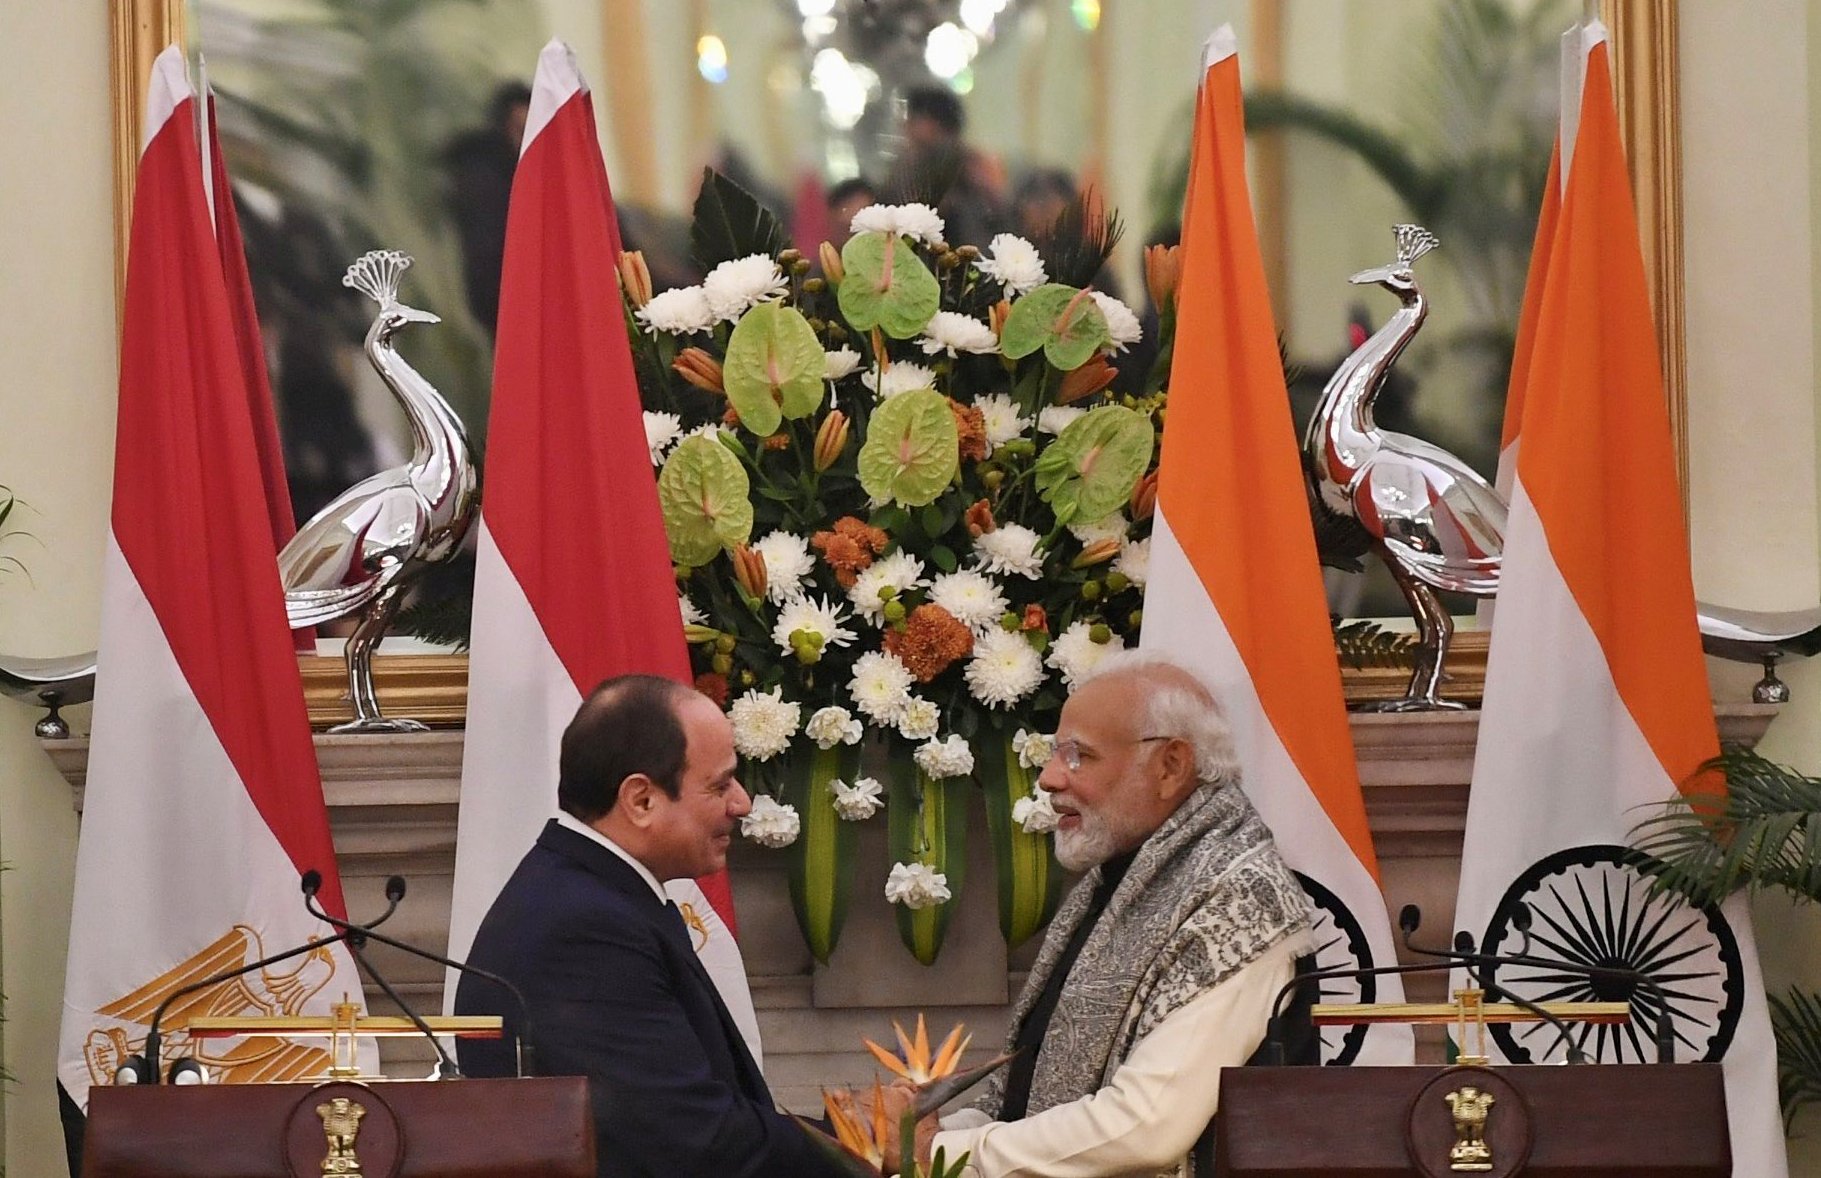 ہندوستان۔مصر دوطرفہ تعاون کو اسٹریٹجک پارٹنرشپ تک بڑھانے کے لیے پانچ معاہدوں پر دستخط